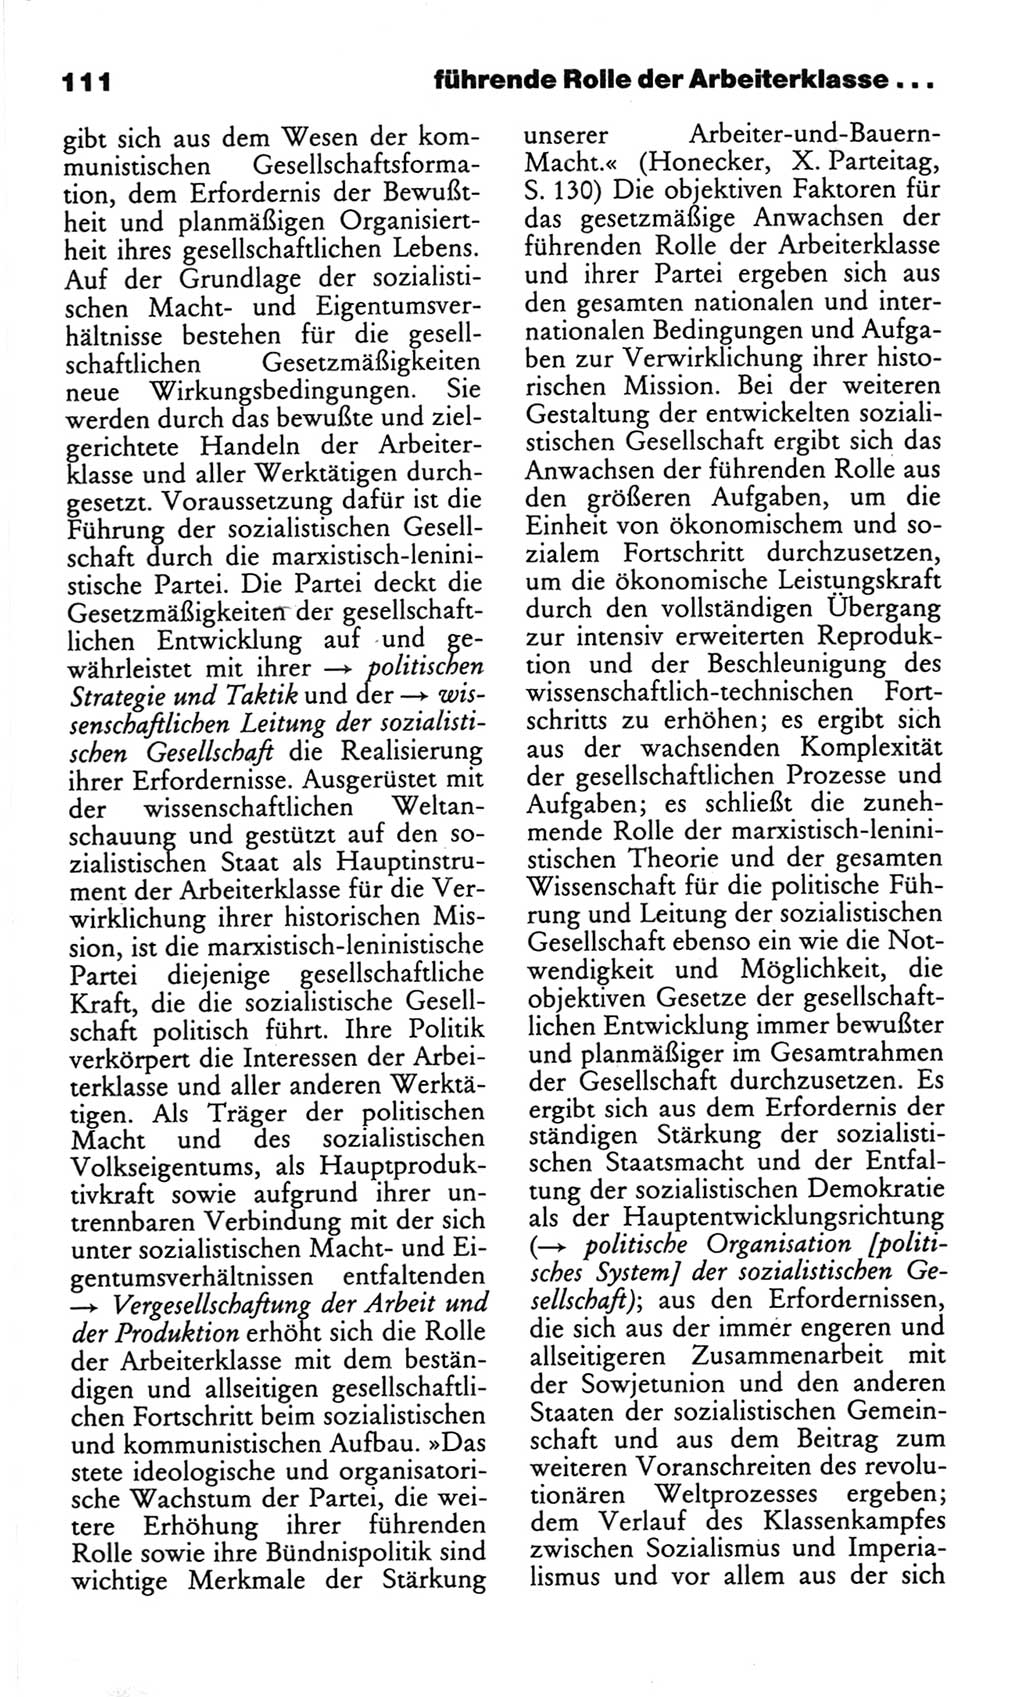 Wörterbuch des wissenschaftlichen Kommunismus [Deutsche Demokratische Republik (DDR)] 1982, Seite 111 (Wb. wiss. Komm. DDR 1982, S. 111)